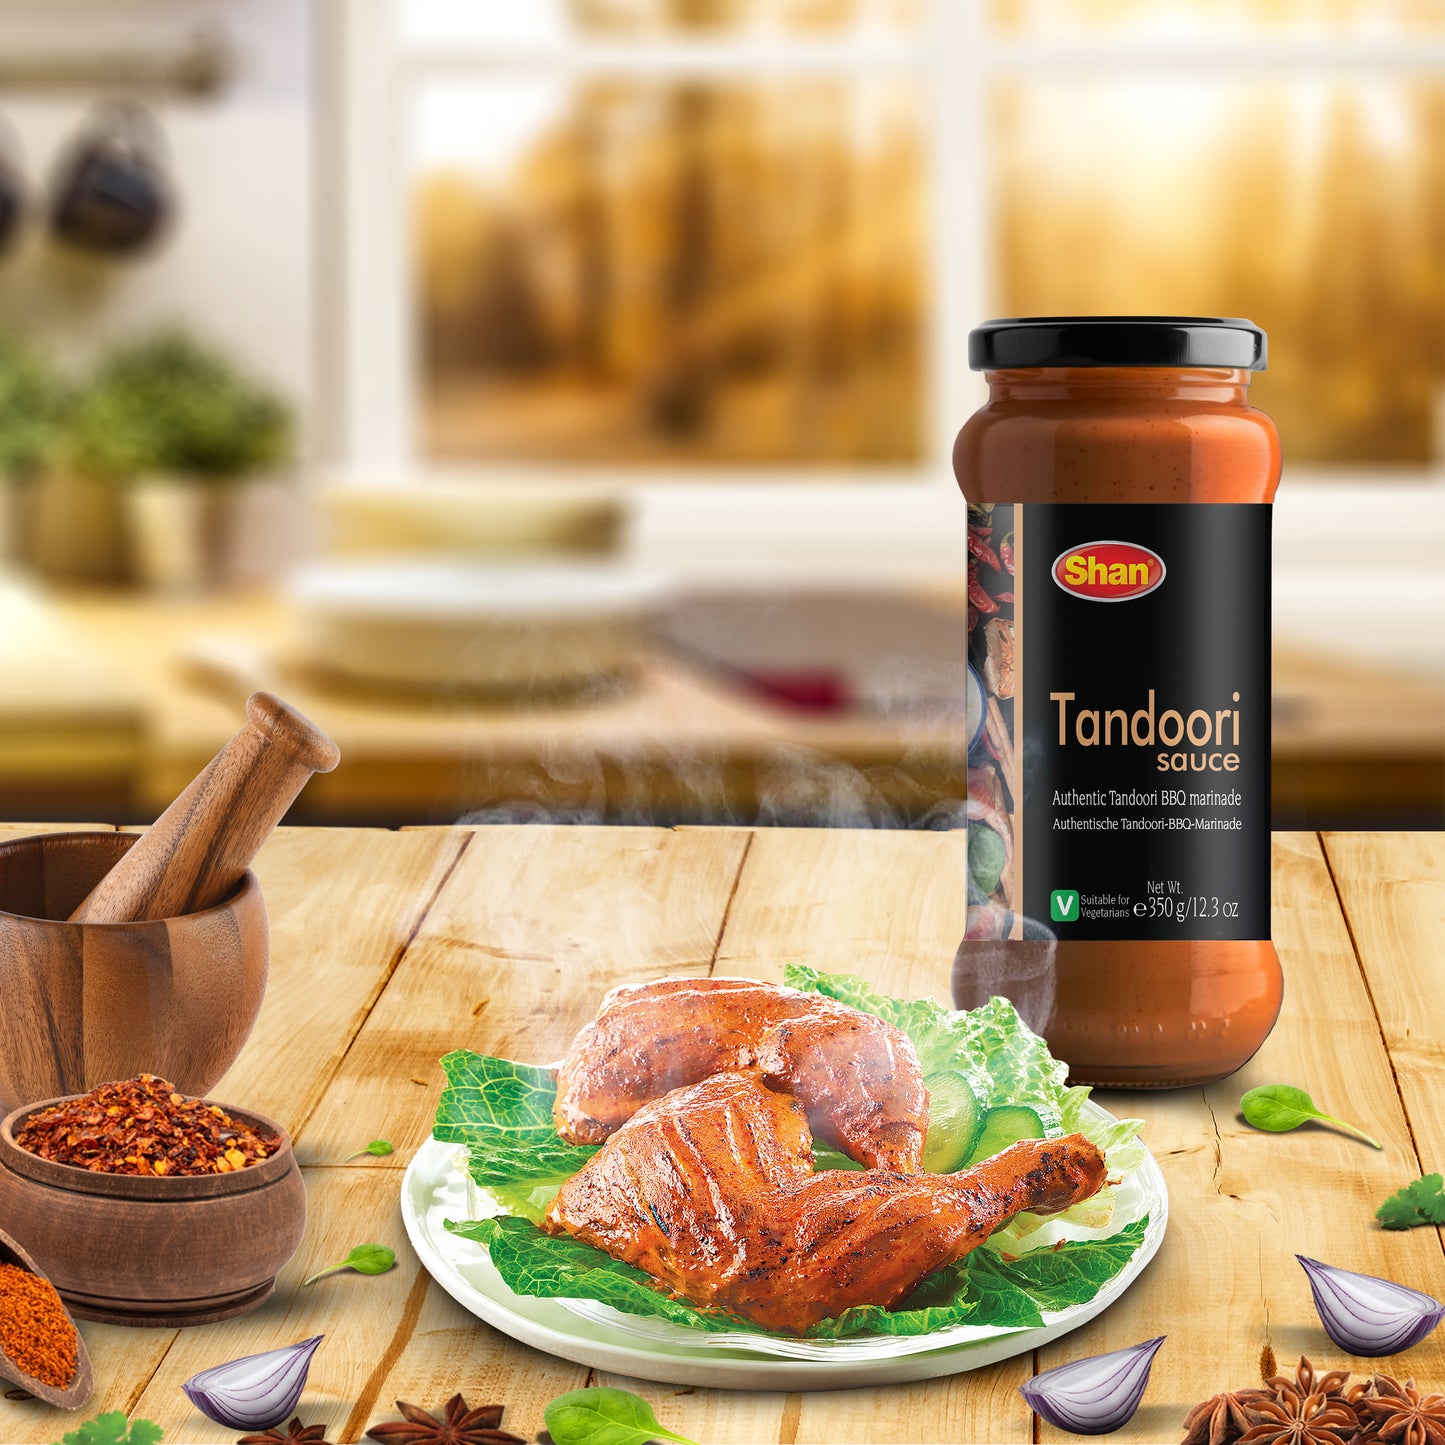 Shan Tandoori Sauce 350gm